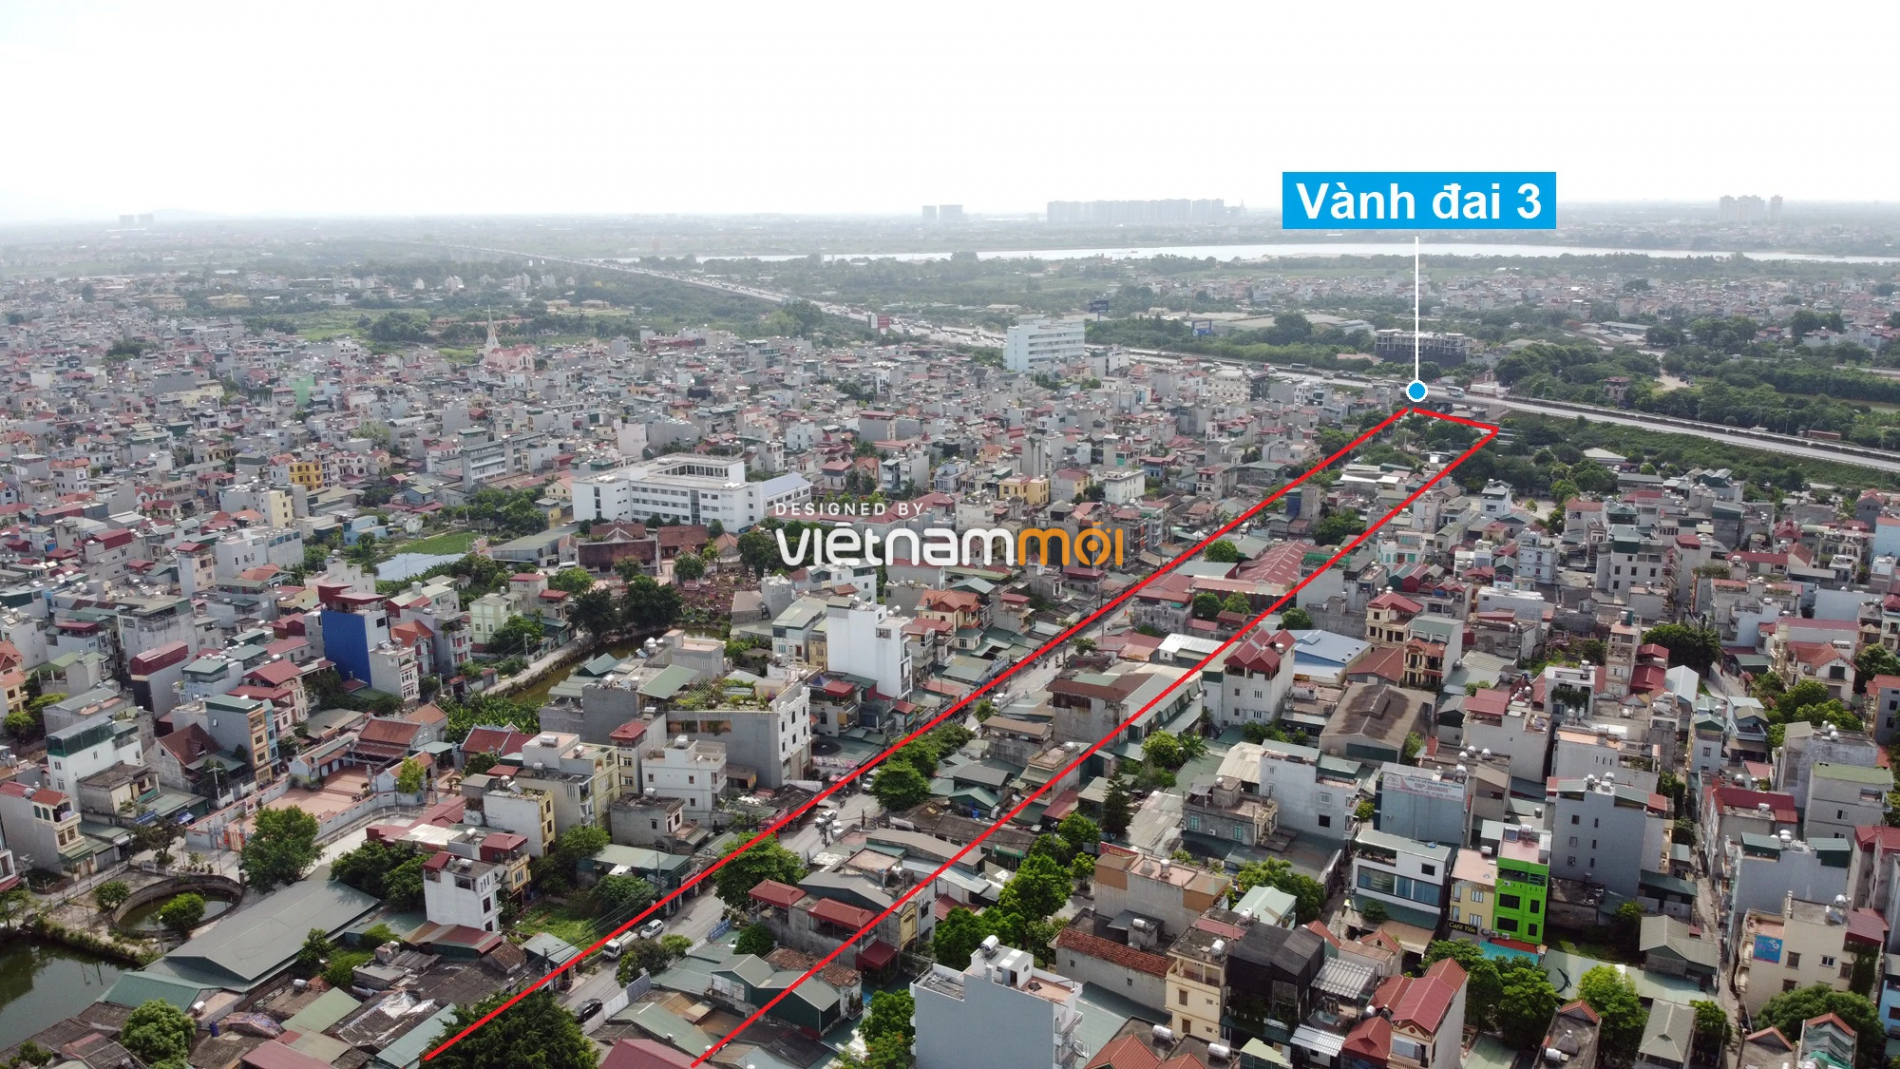 Những khu đất sắp thu hồi để mở đường ở quận Hoàng Mai, Hà Nội (phần 4) - Ảnh 15.